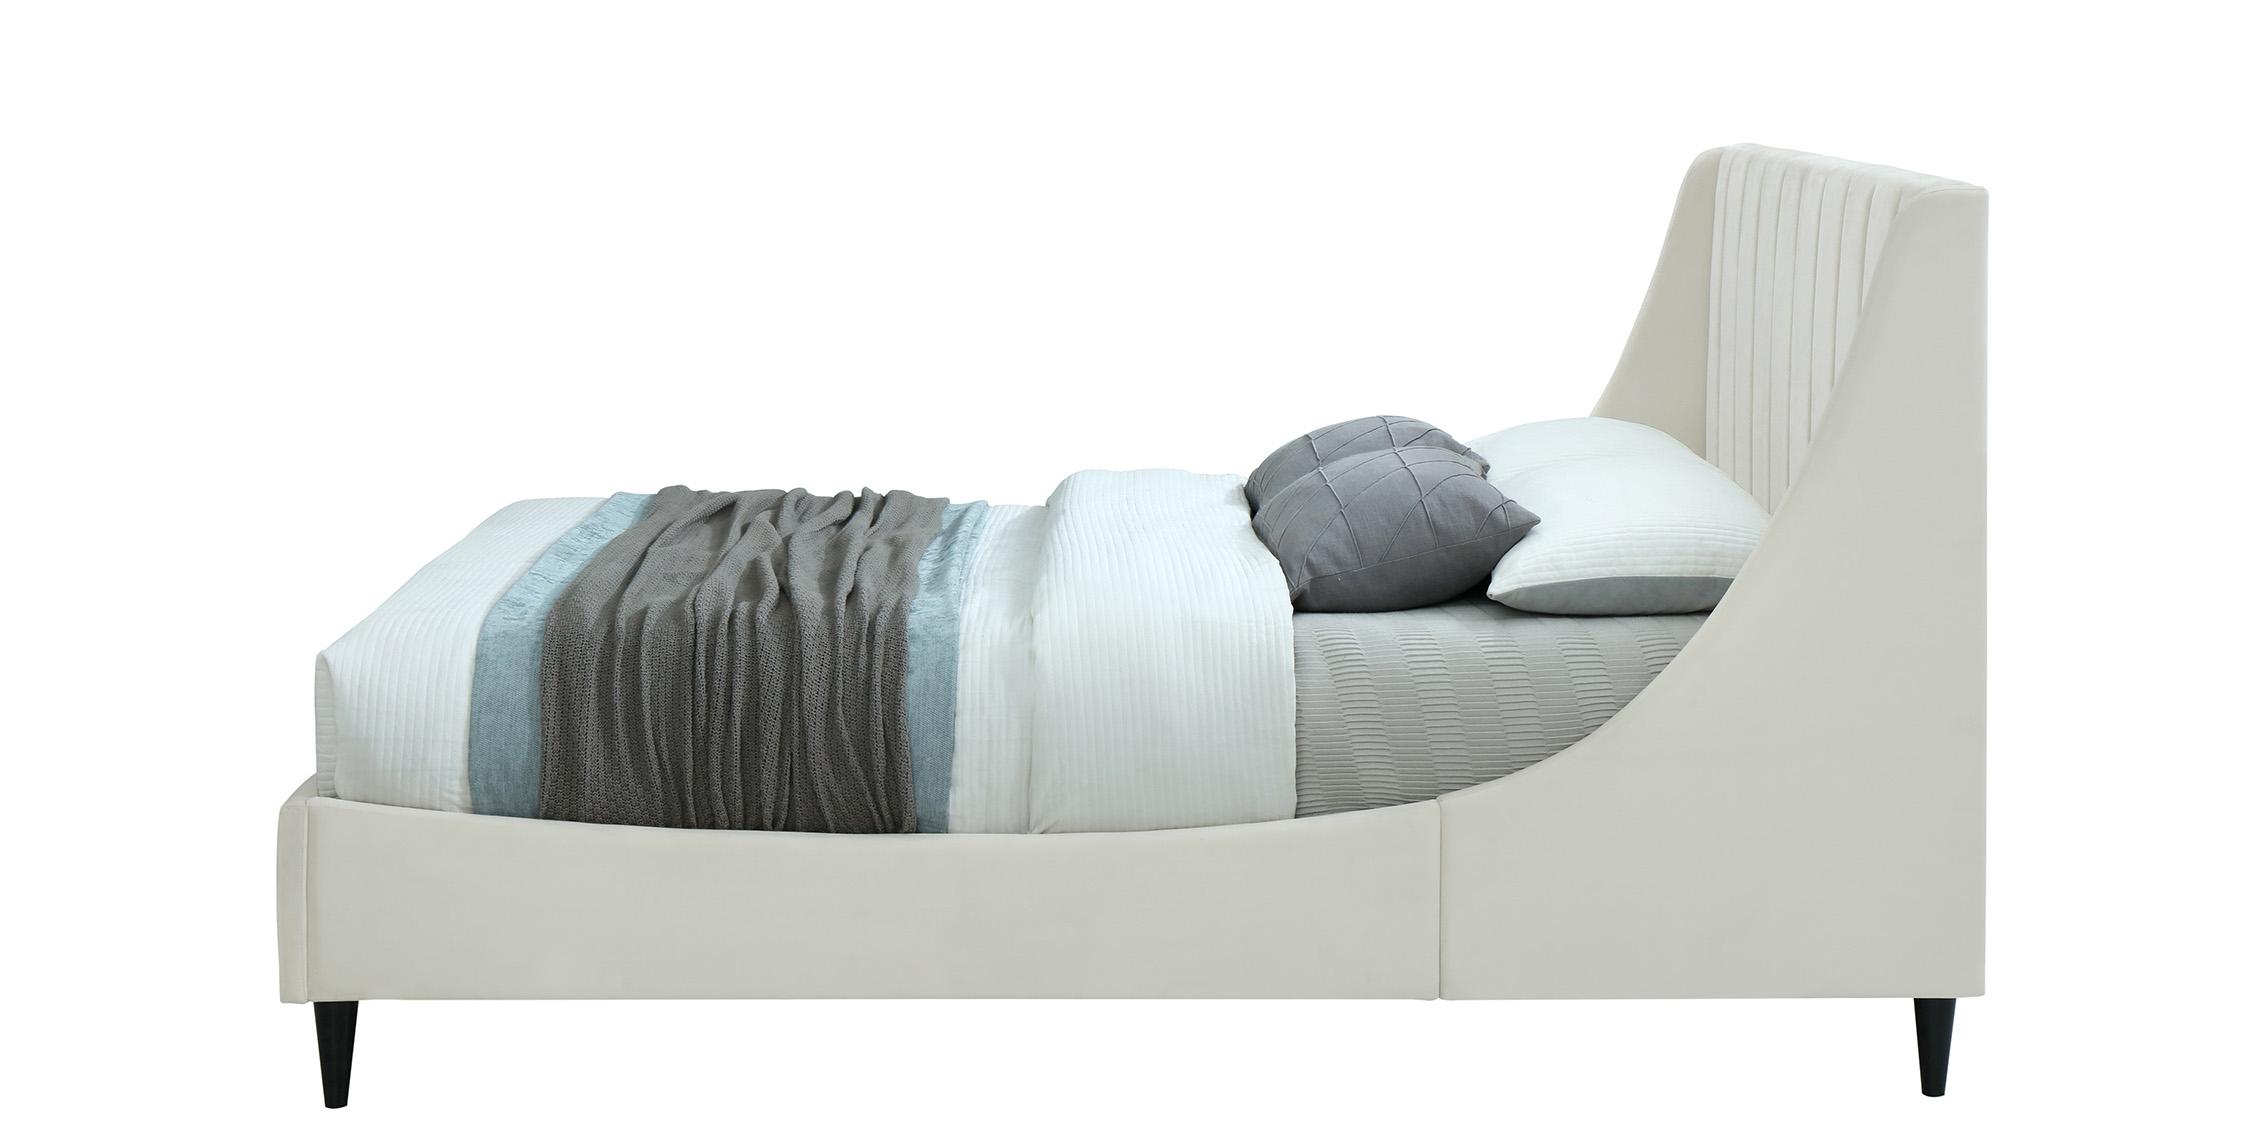 

    
EvaCream-Q Meridian Furniture Platform Bed
